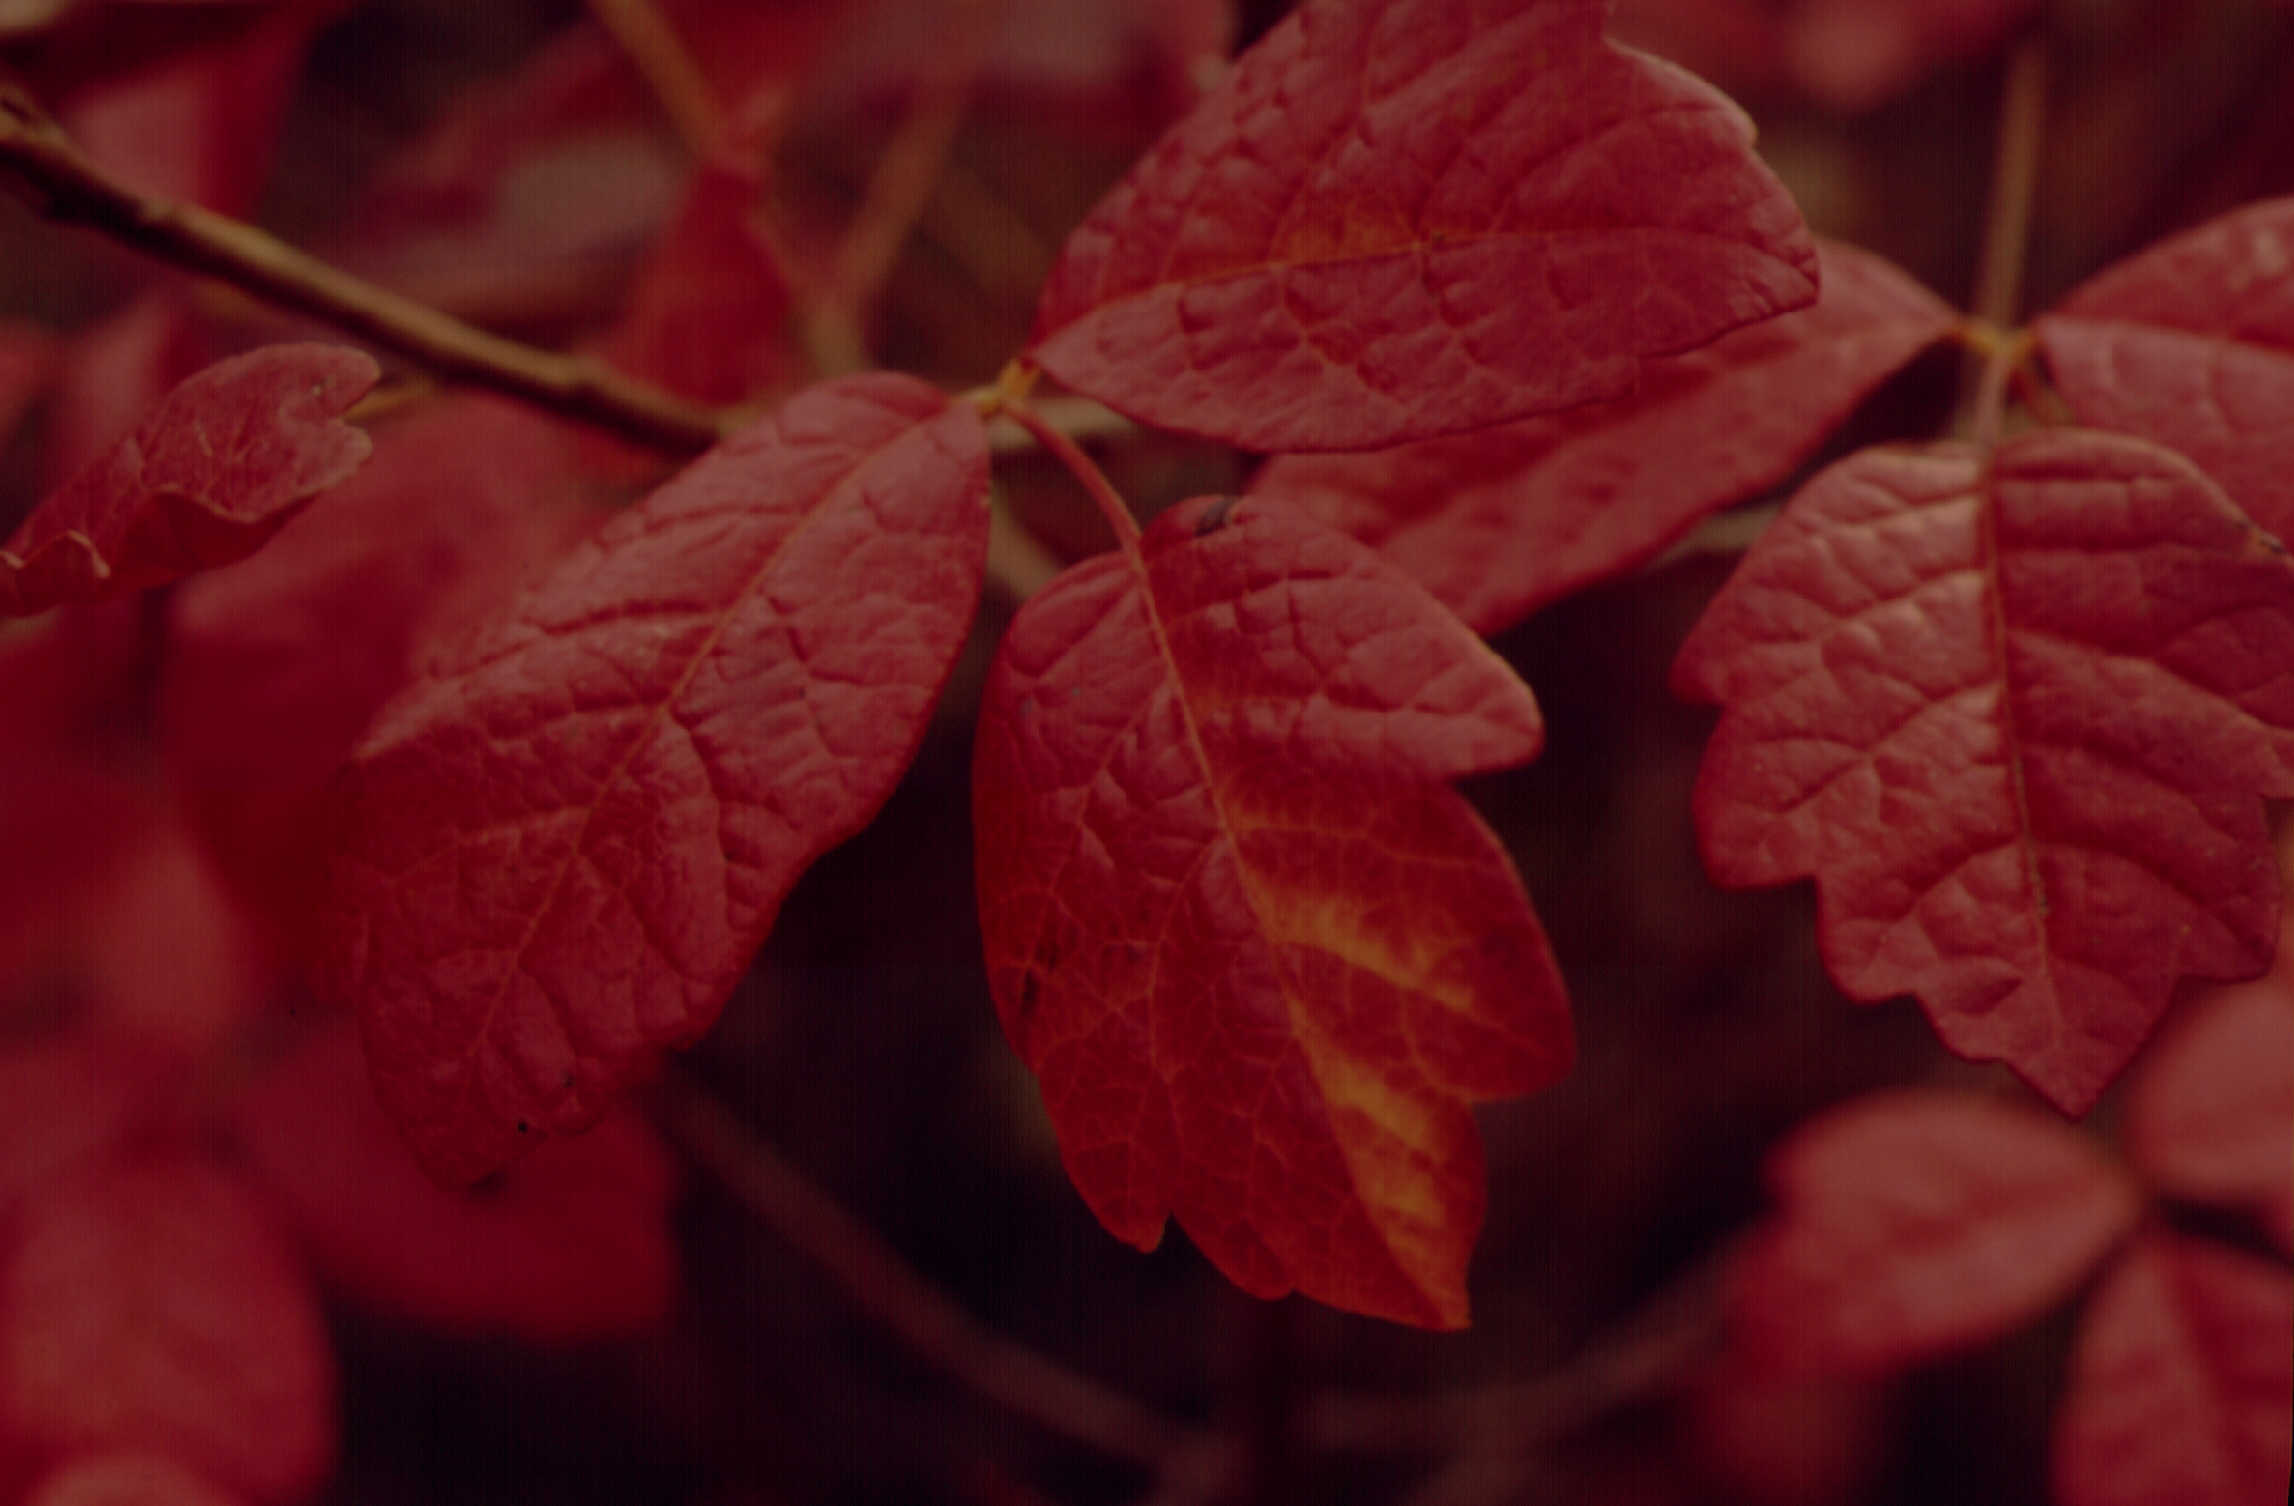 Western Poison Oak in fall color